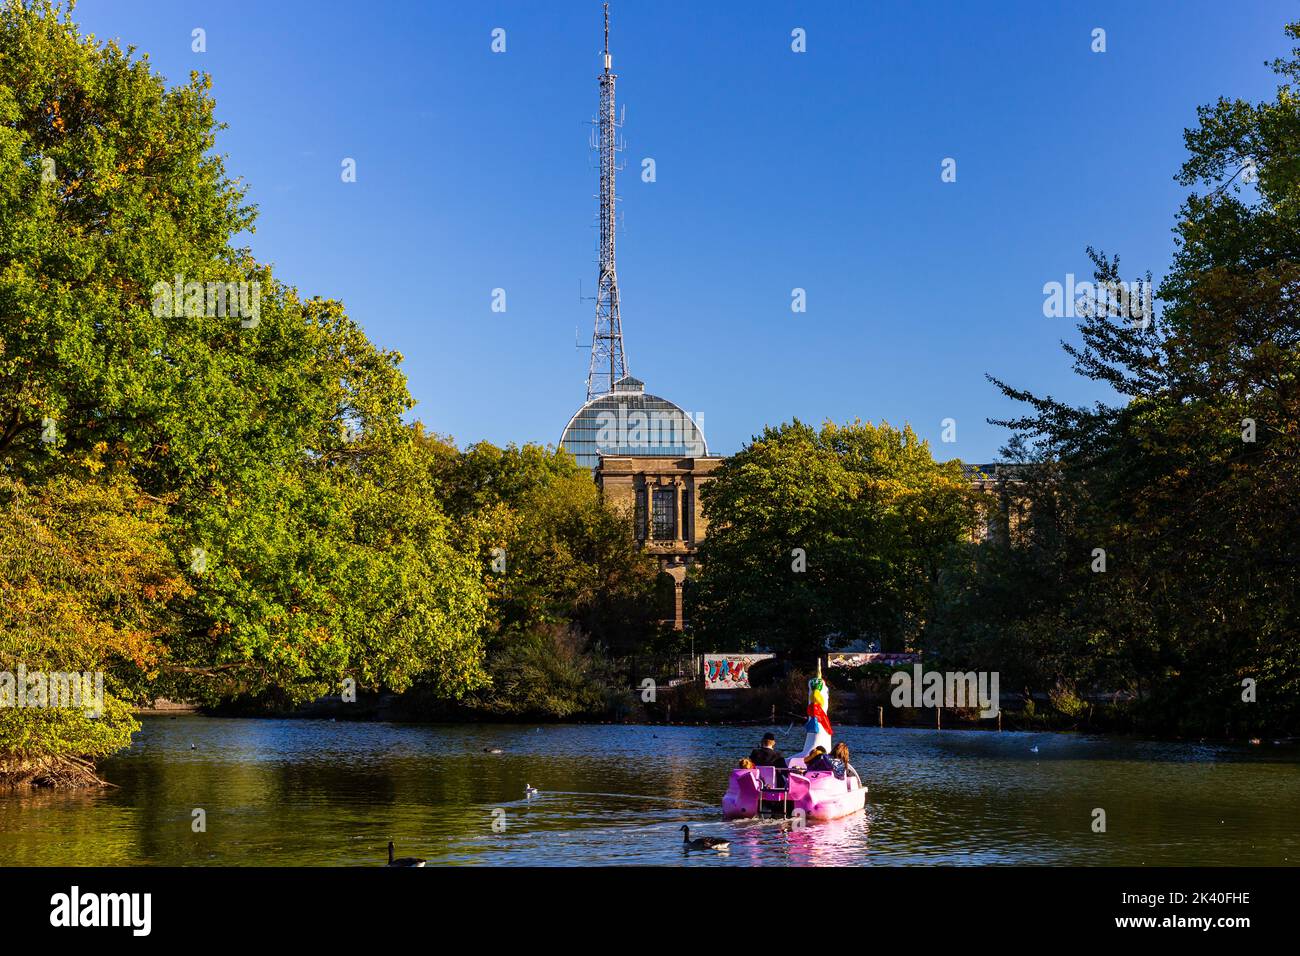 Eine orthodoxe jüdische Familie, die sich in einem ungewöhnlichen Paddelboot auf dem Alexandra Park See im Norden Londons amüsieren kann.der BBC Tower ist deutlich zu sehen. Stockfoto